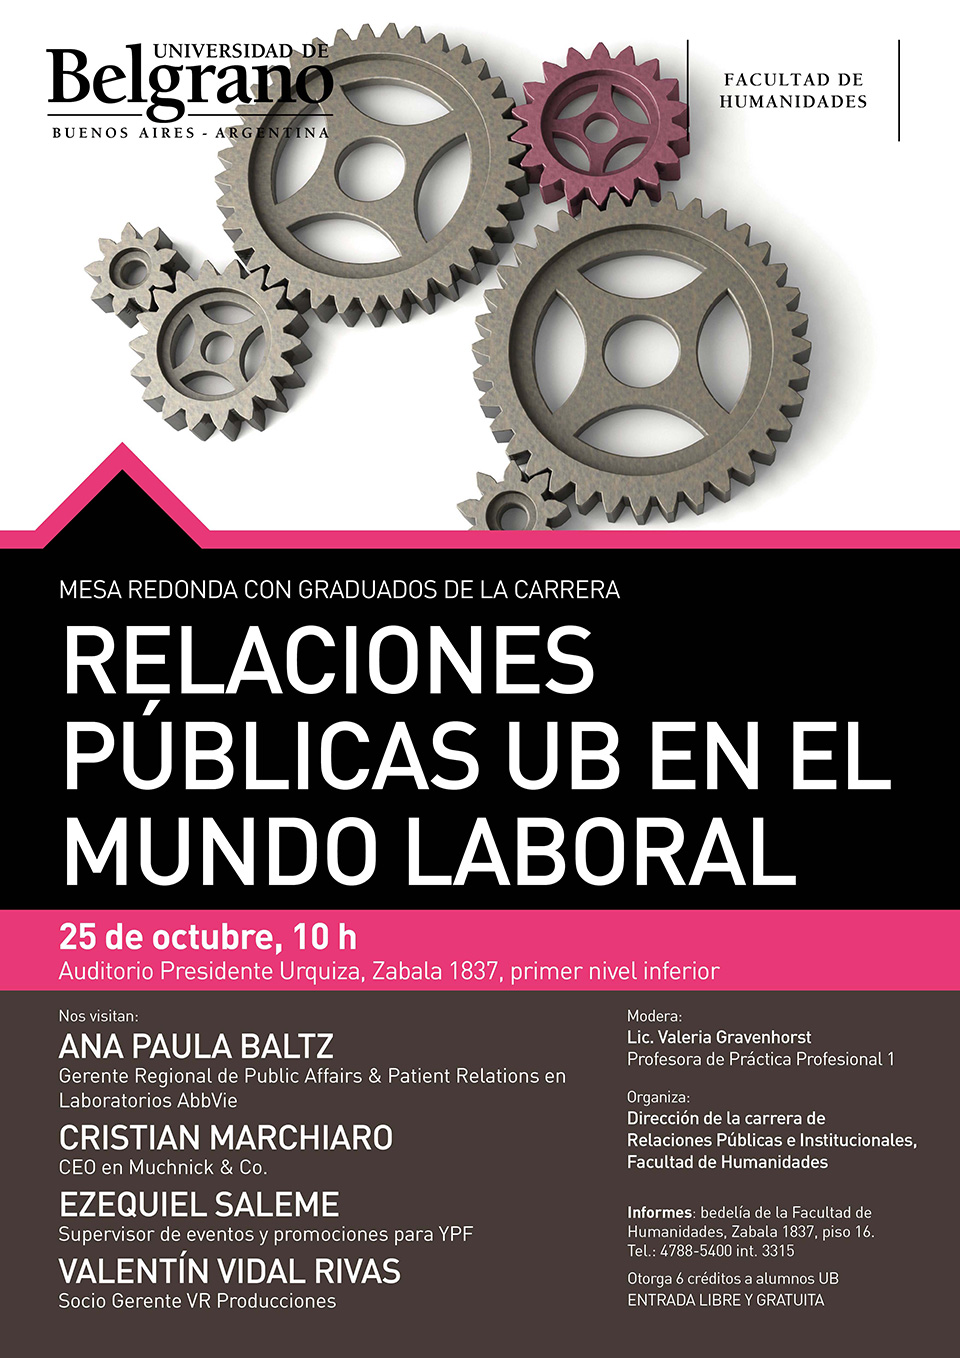 Universidad de Belgrano |Relaciones Públicas UB en el Mundo Laboral